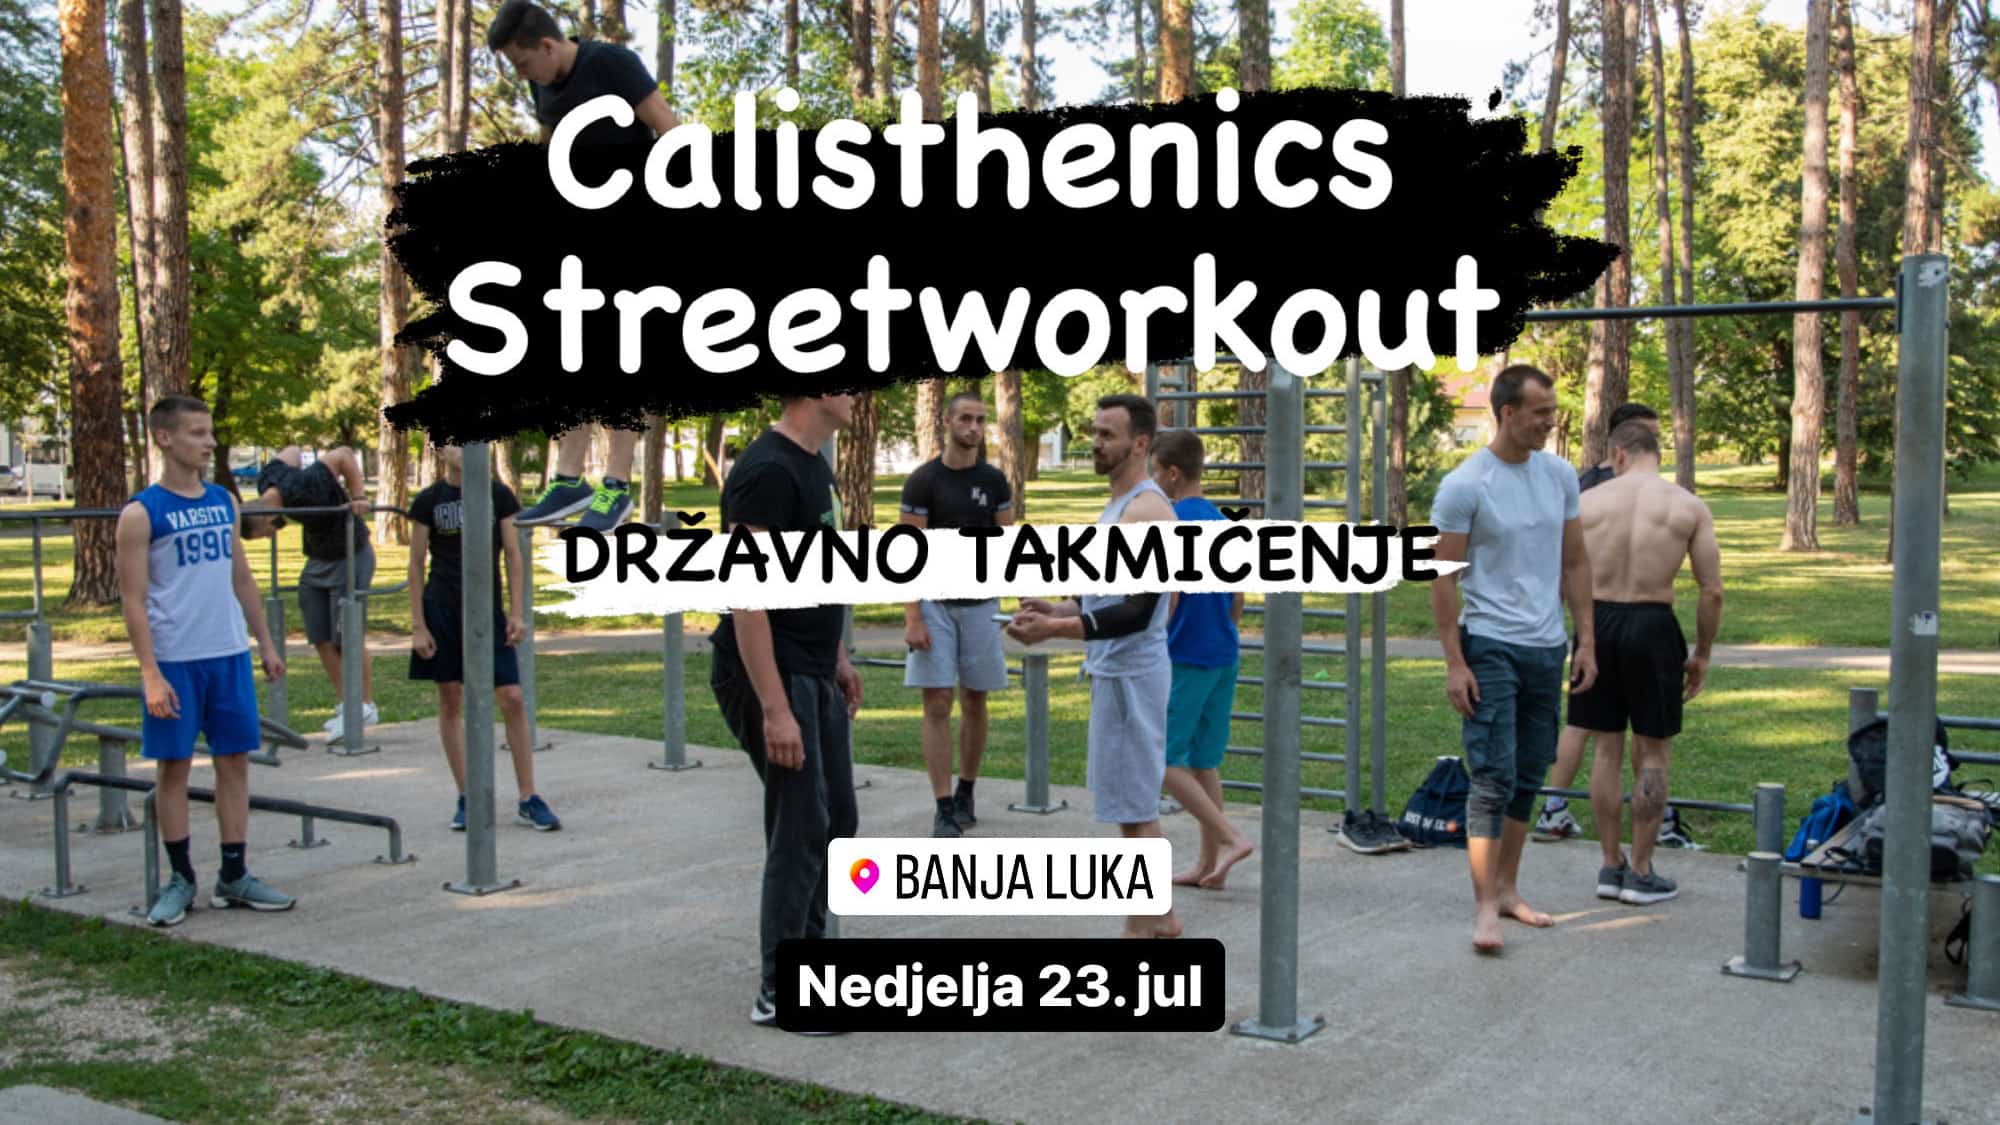 Poziv na učešće u državnom Calisthenics & Streetworkout takmičenju 23. jula u Banjaluci